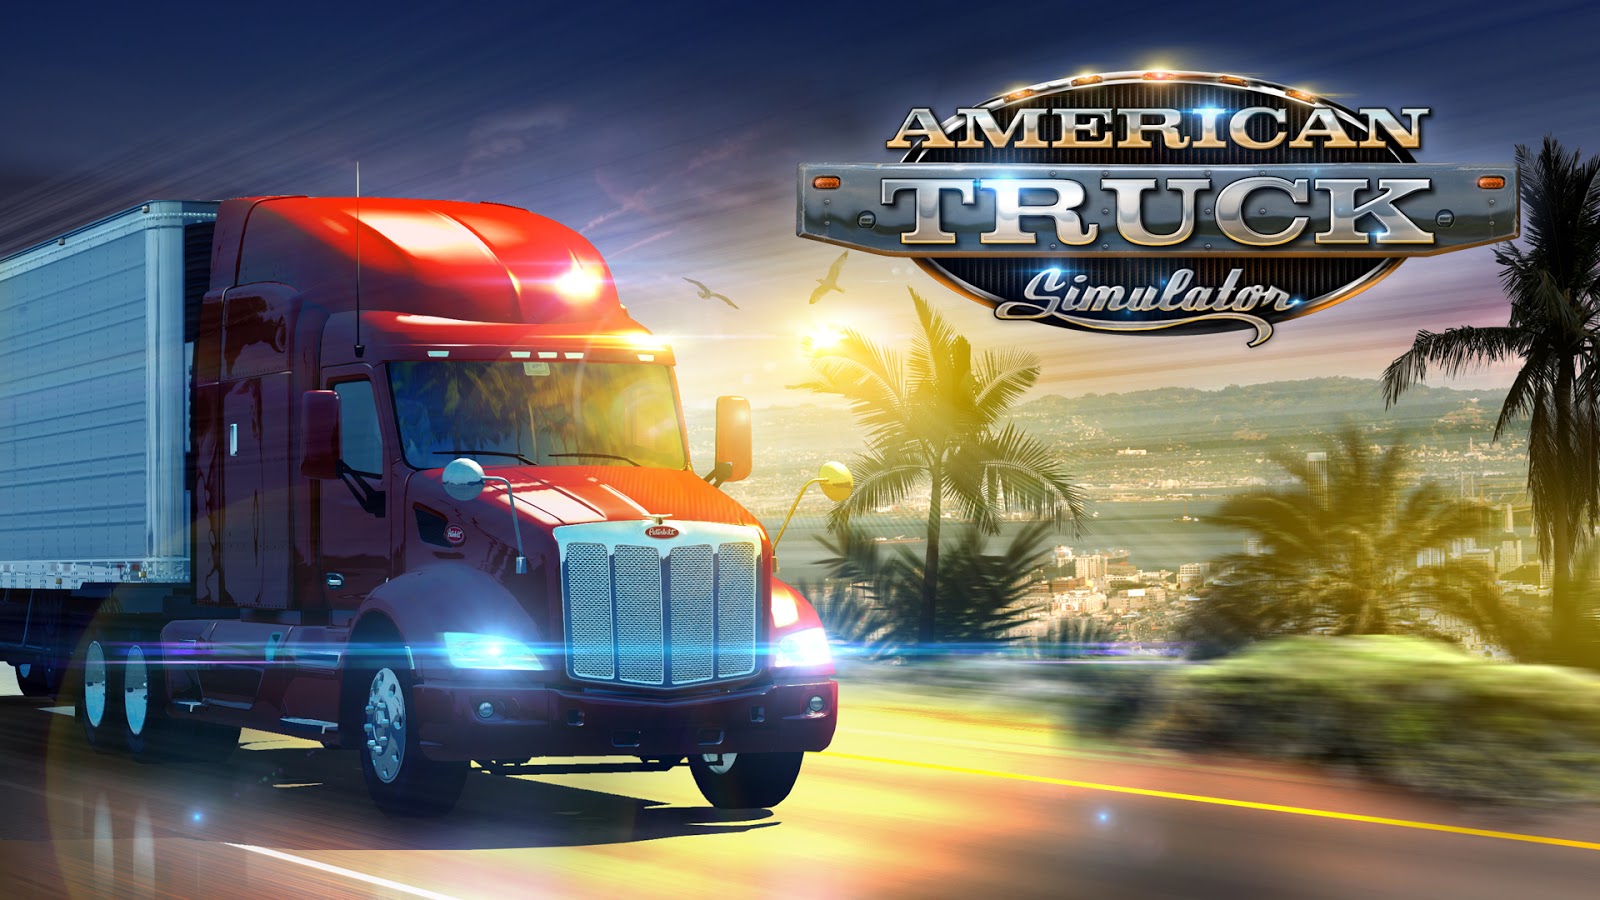 خرید بازی American truck simulator | سی دی امریکن تراک | سایت سی دی کی اشتراکی ارزان ترین سایت خرید اکانت بازی American truck simulator